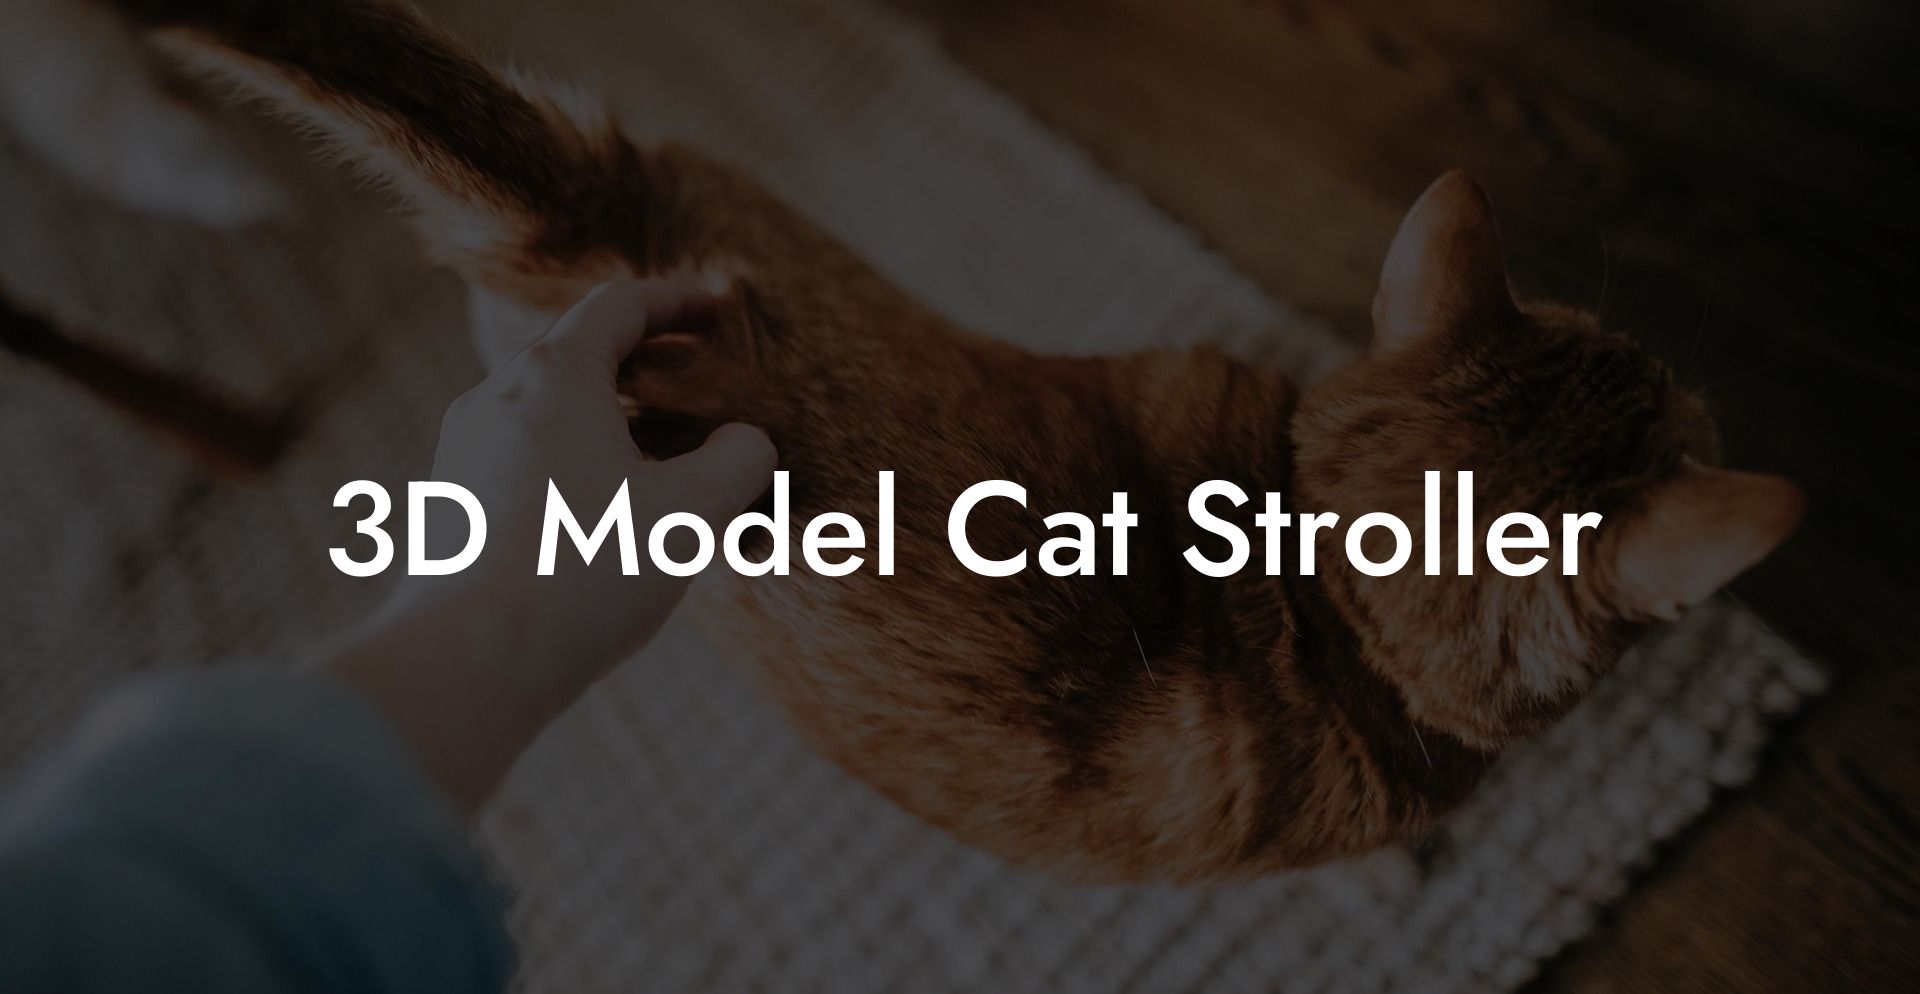 3D Model Cat Stroller